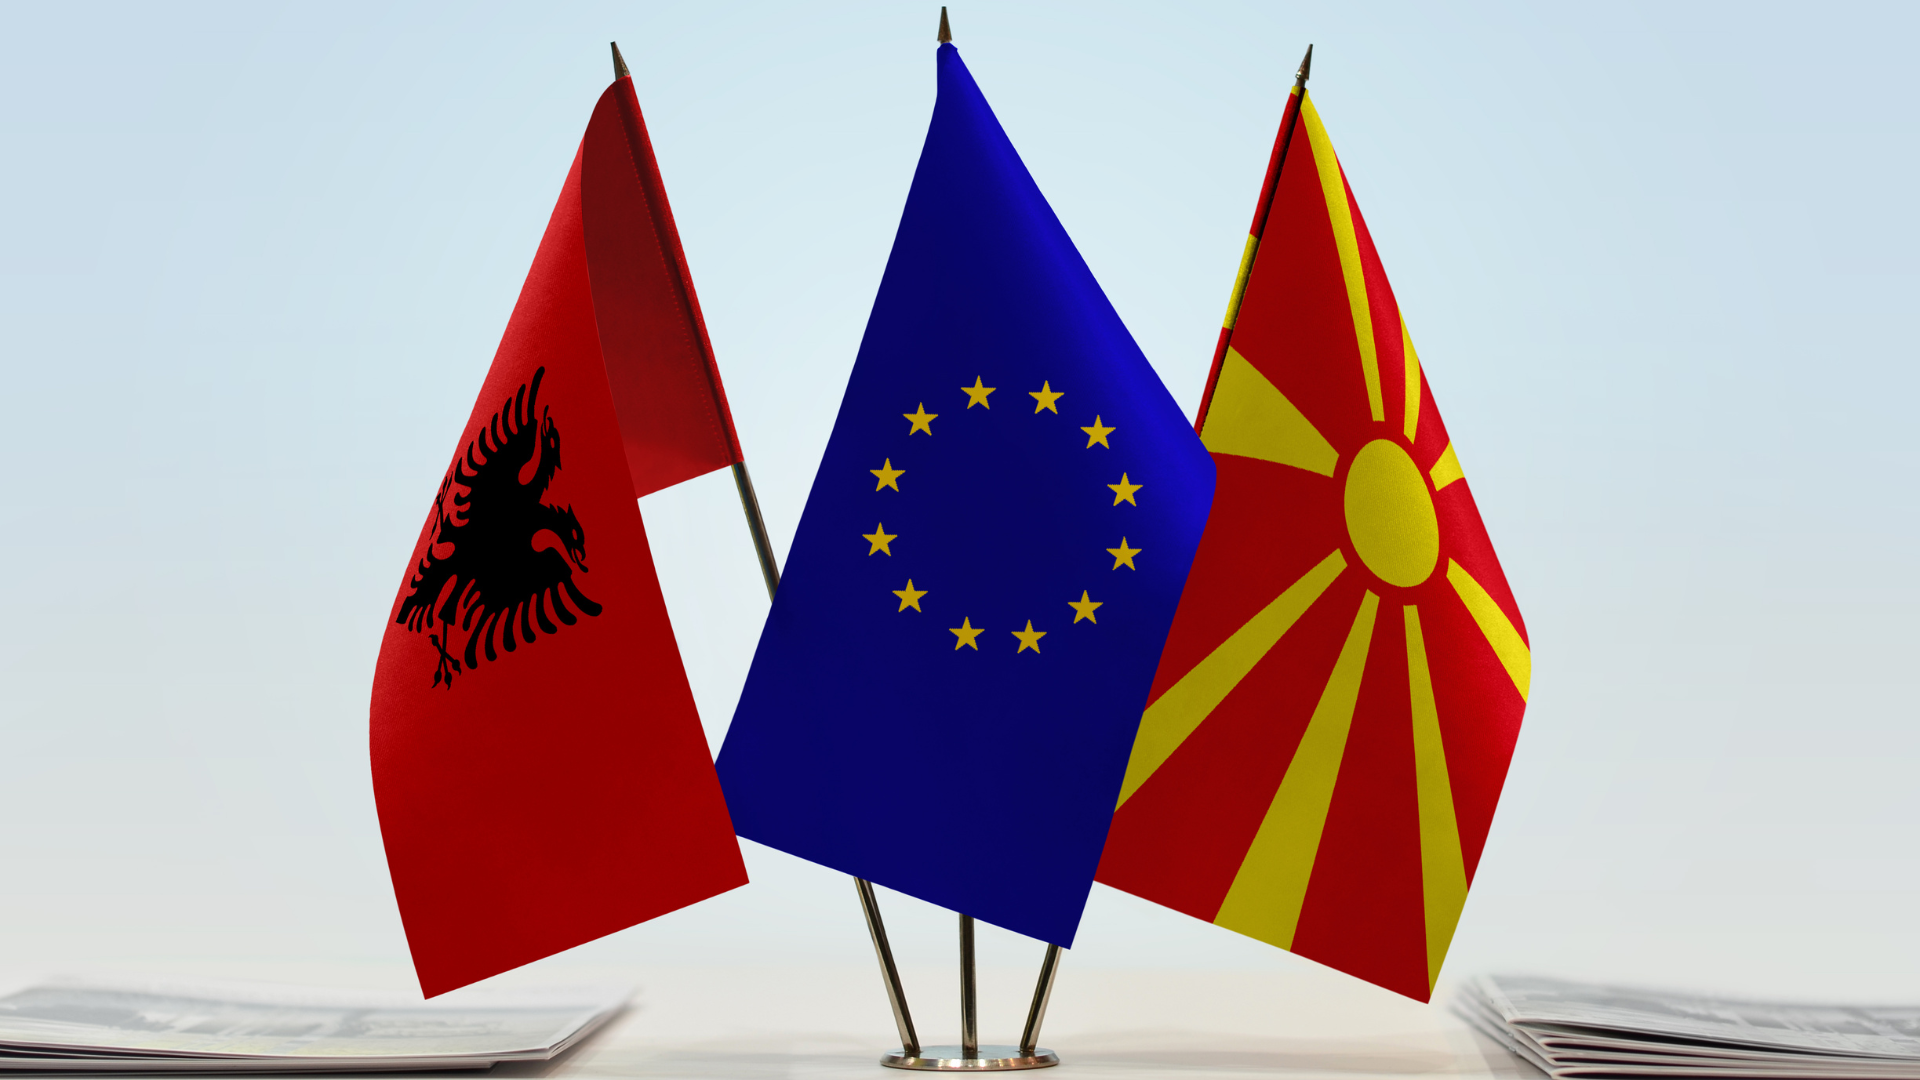 Flamuri i Maqedonisë së Veriut (RMV), Shqipërisë dhe i Bashkimit Evropian (BE). Foto: Oleksandr Filon në Canva